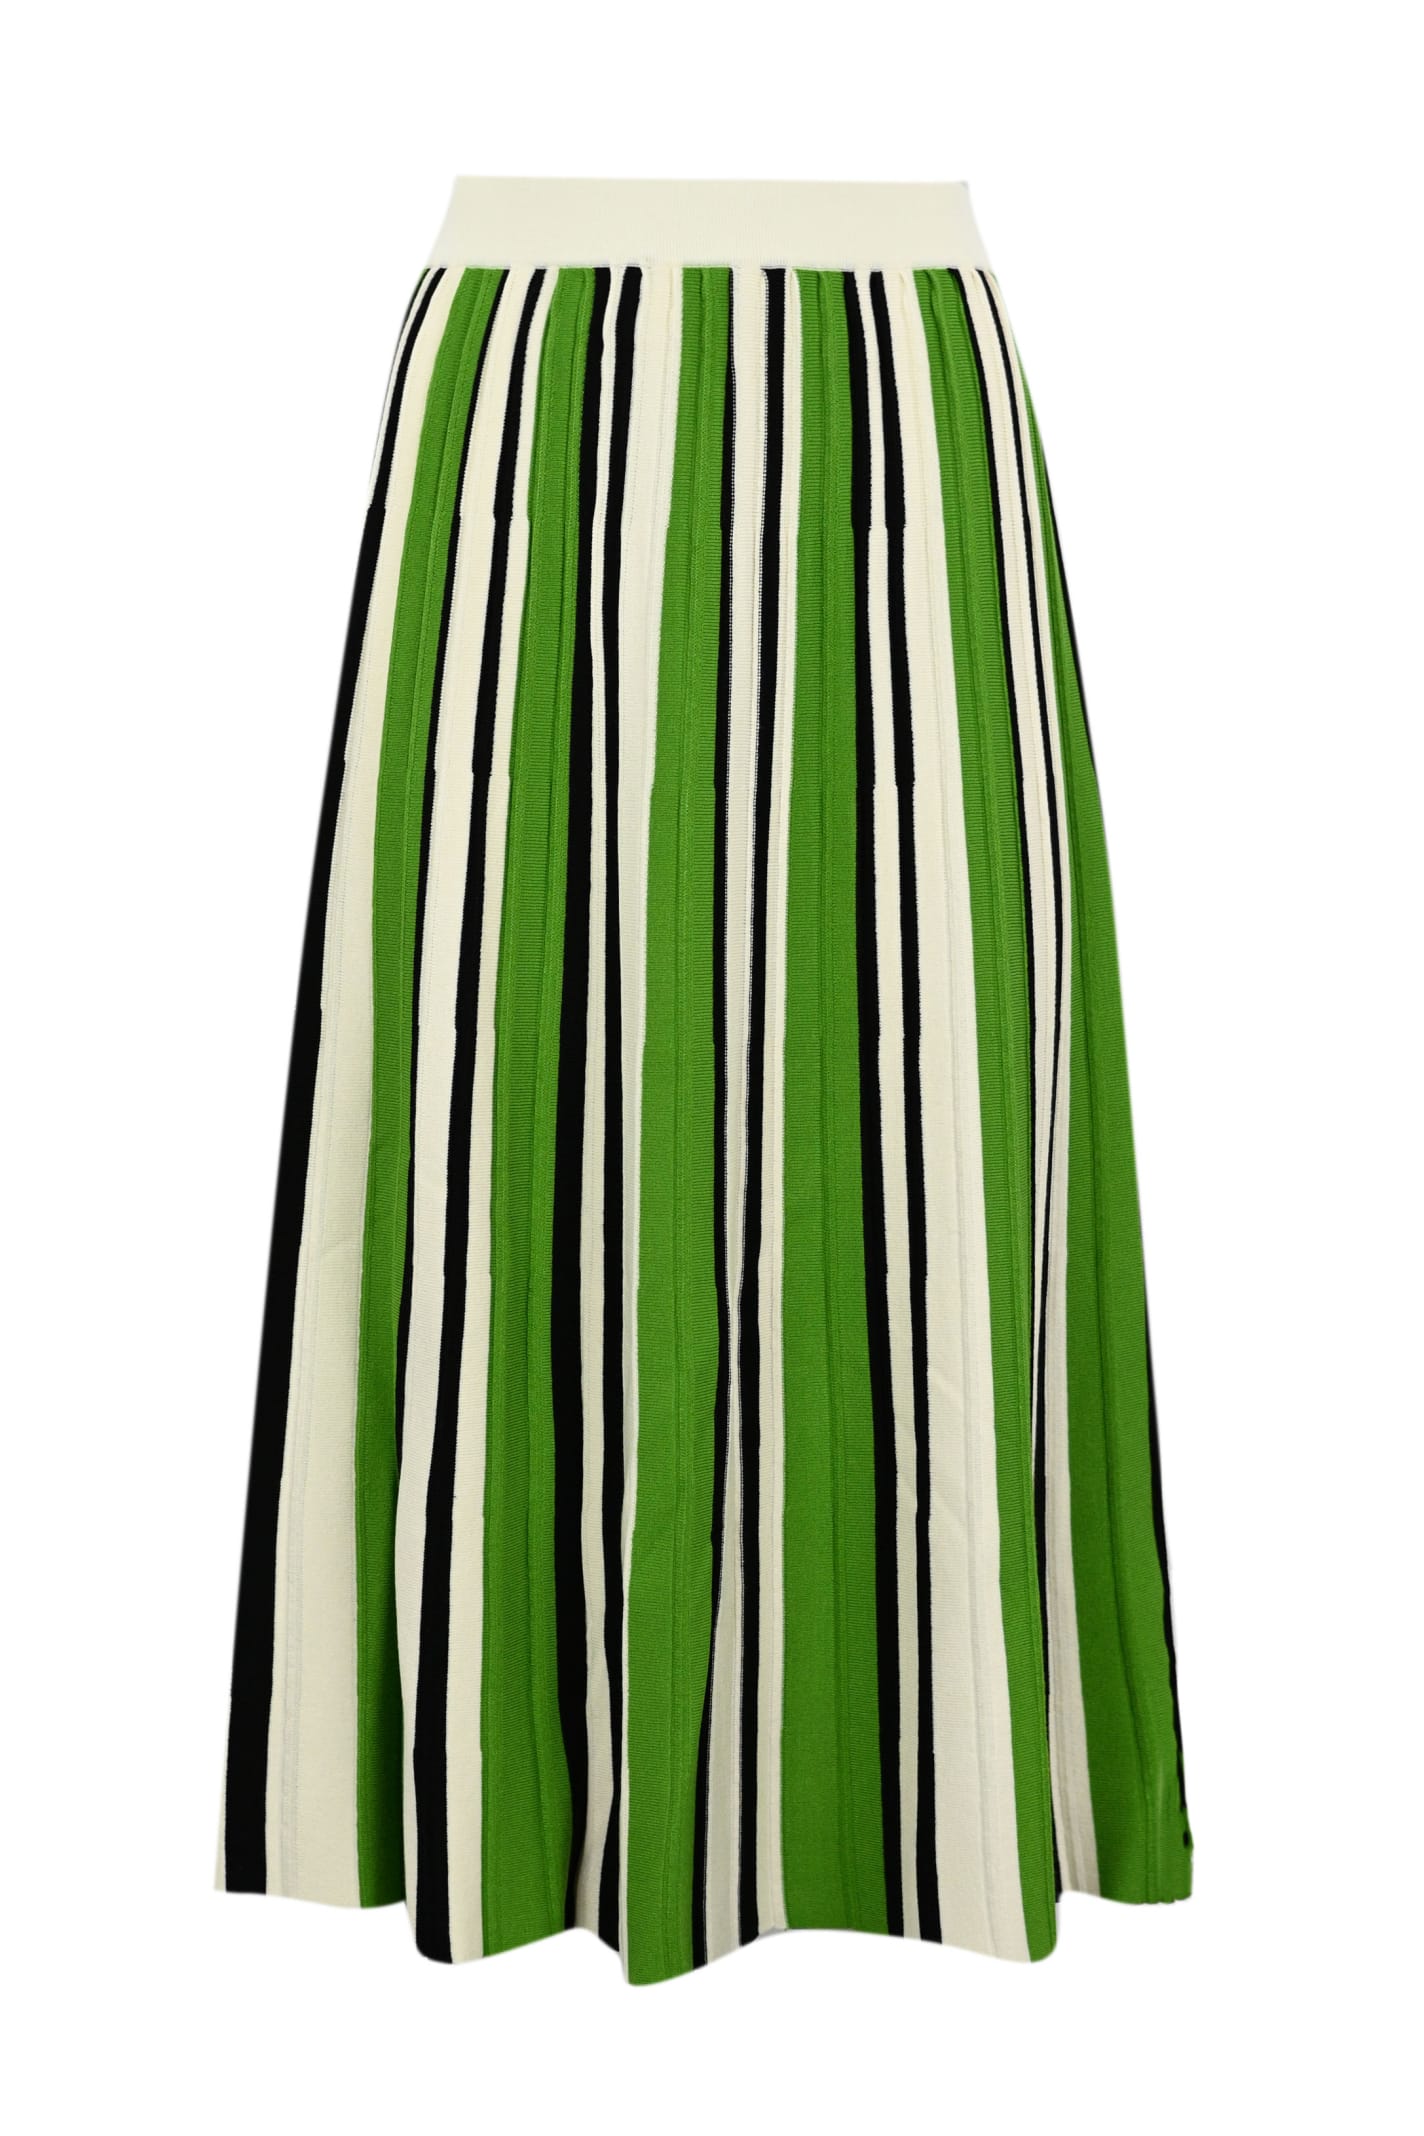 Weekend Max Mara Pleated Skirt In editta Stretch Yarn